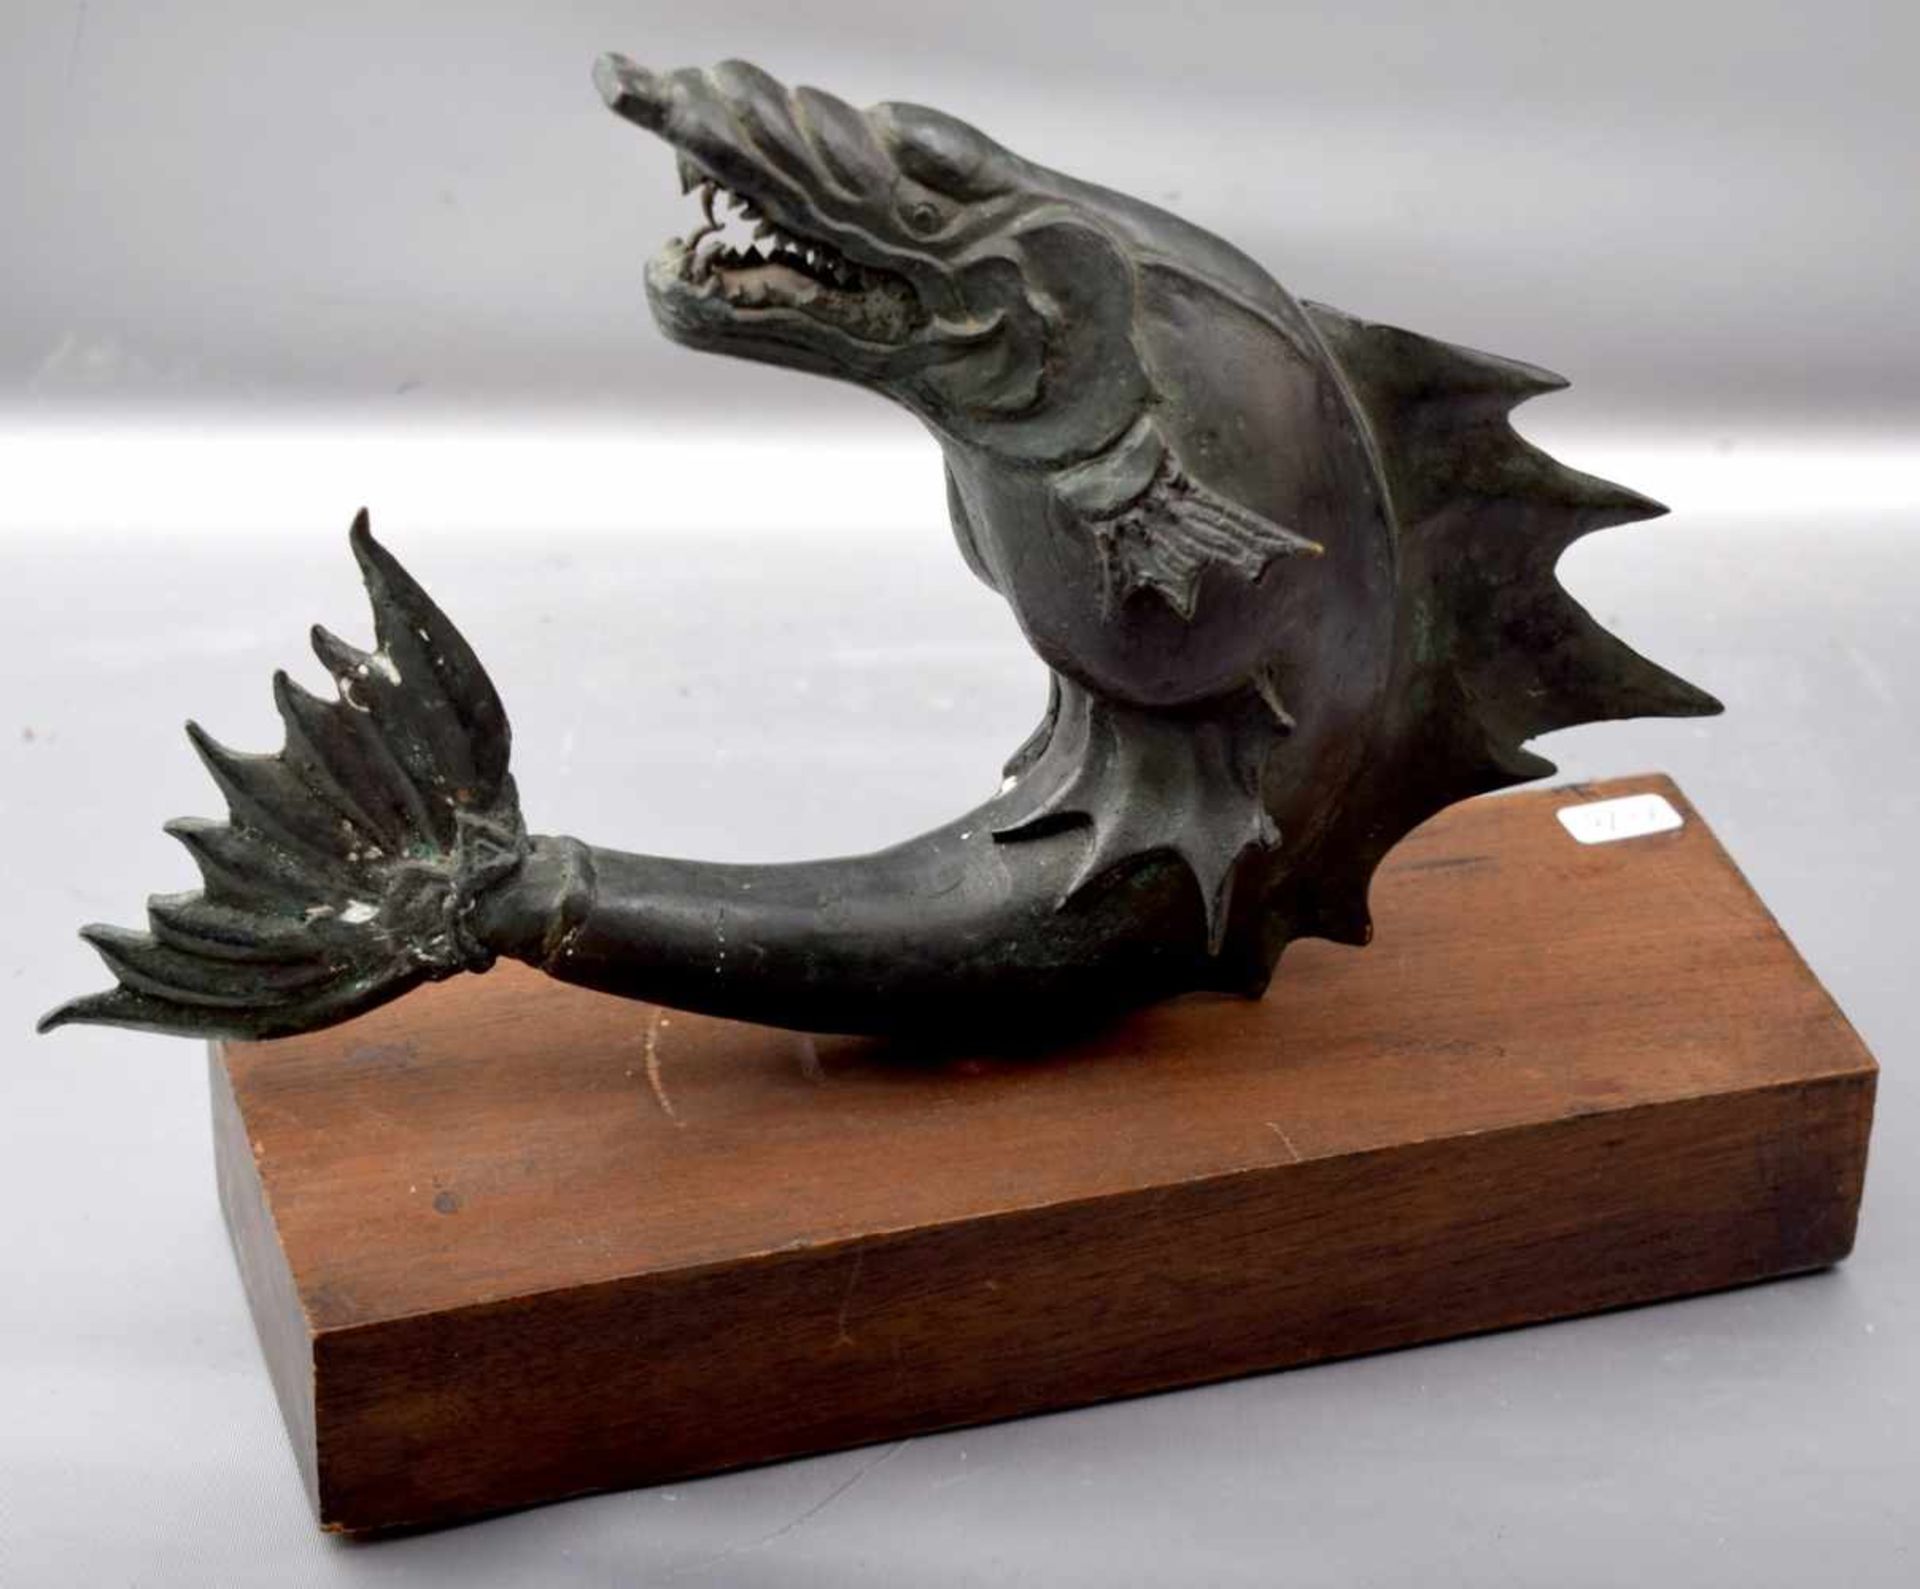 Fabelwesen in Form eines Fisches, Metall, patiniert, auf Holzsockel, H 20 cm, L 26 cm